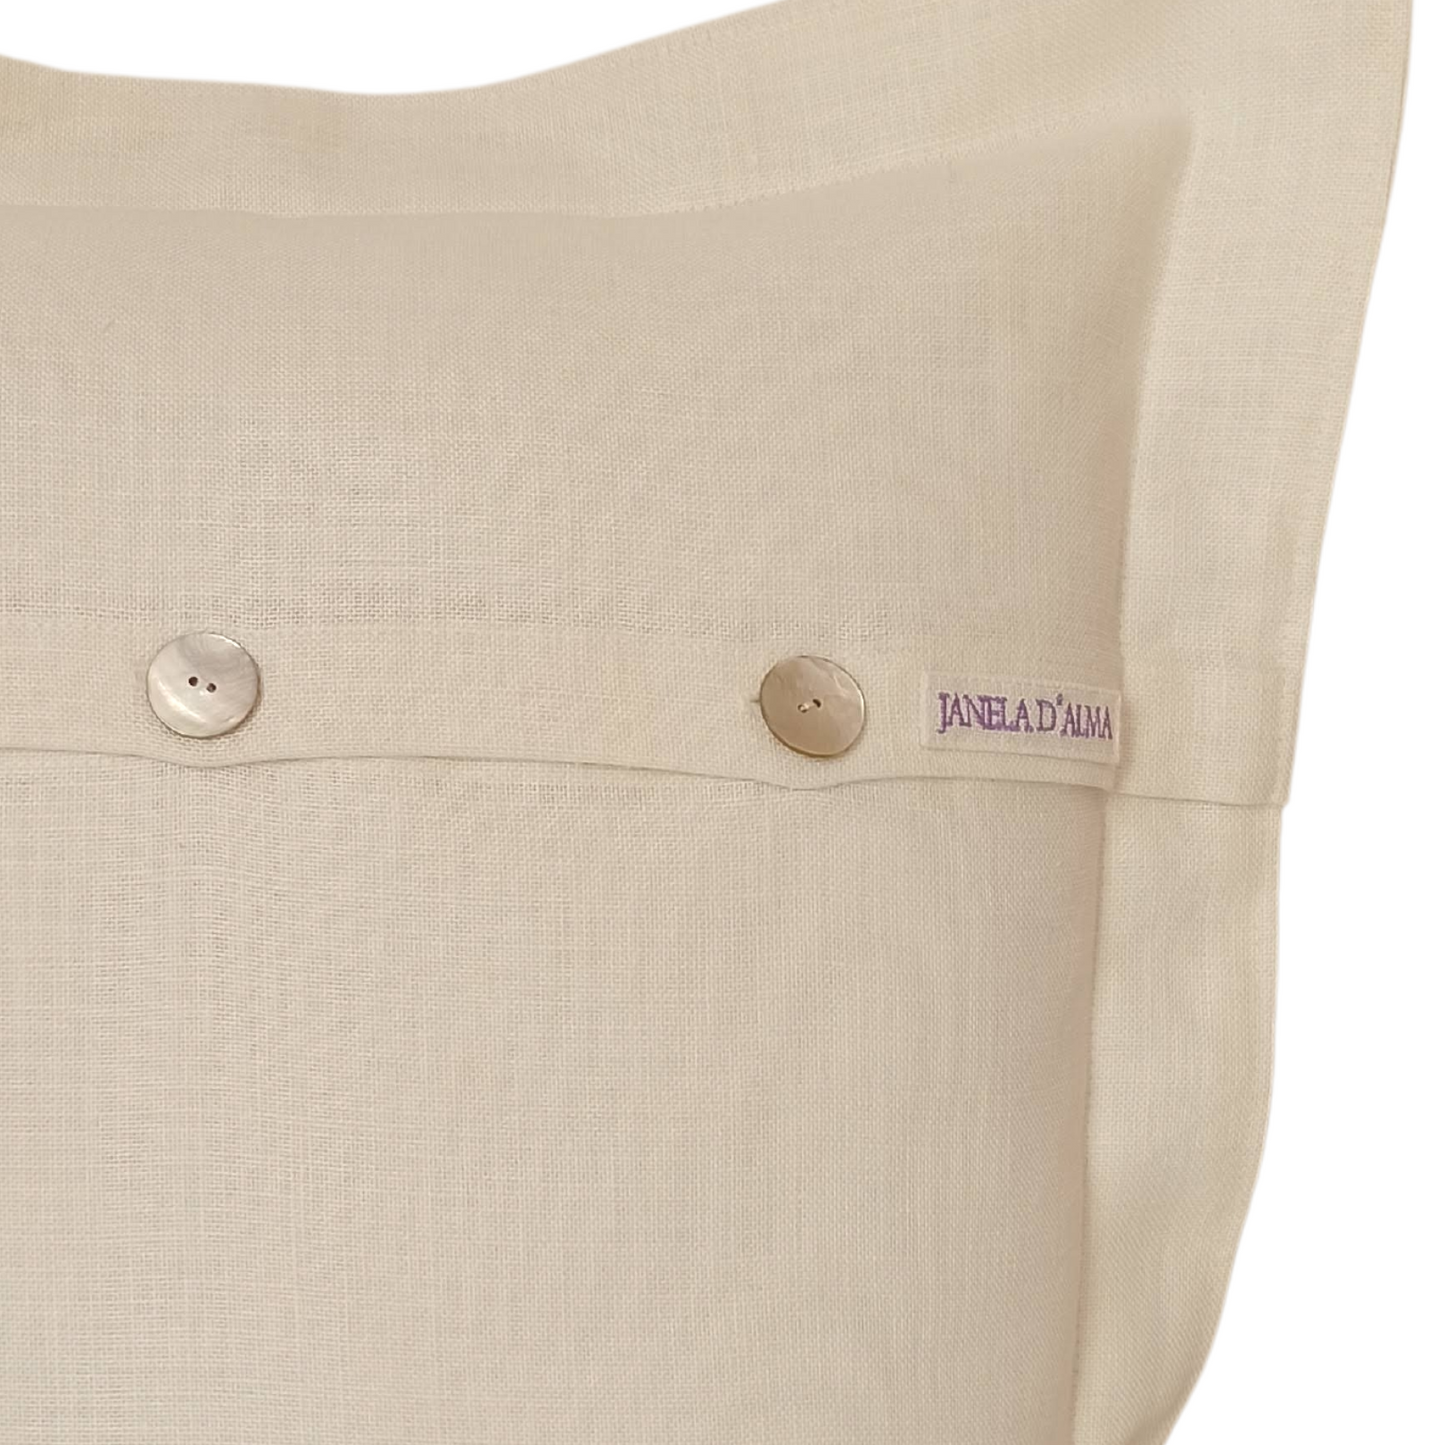 Linen Cushion Cover Lavander - Back Image Details